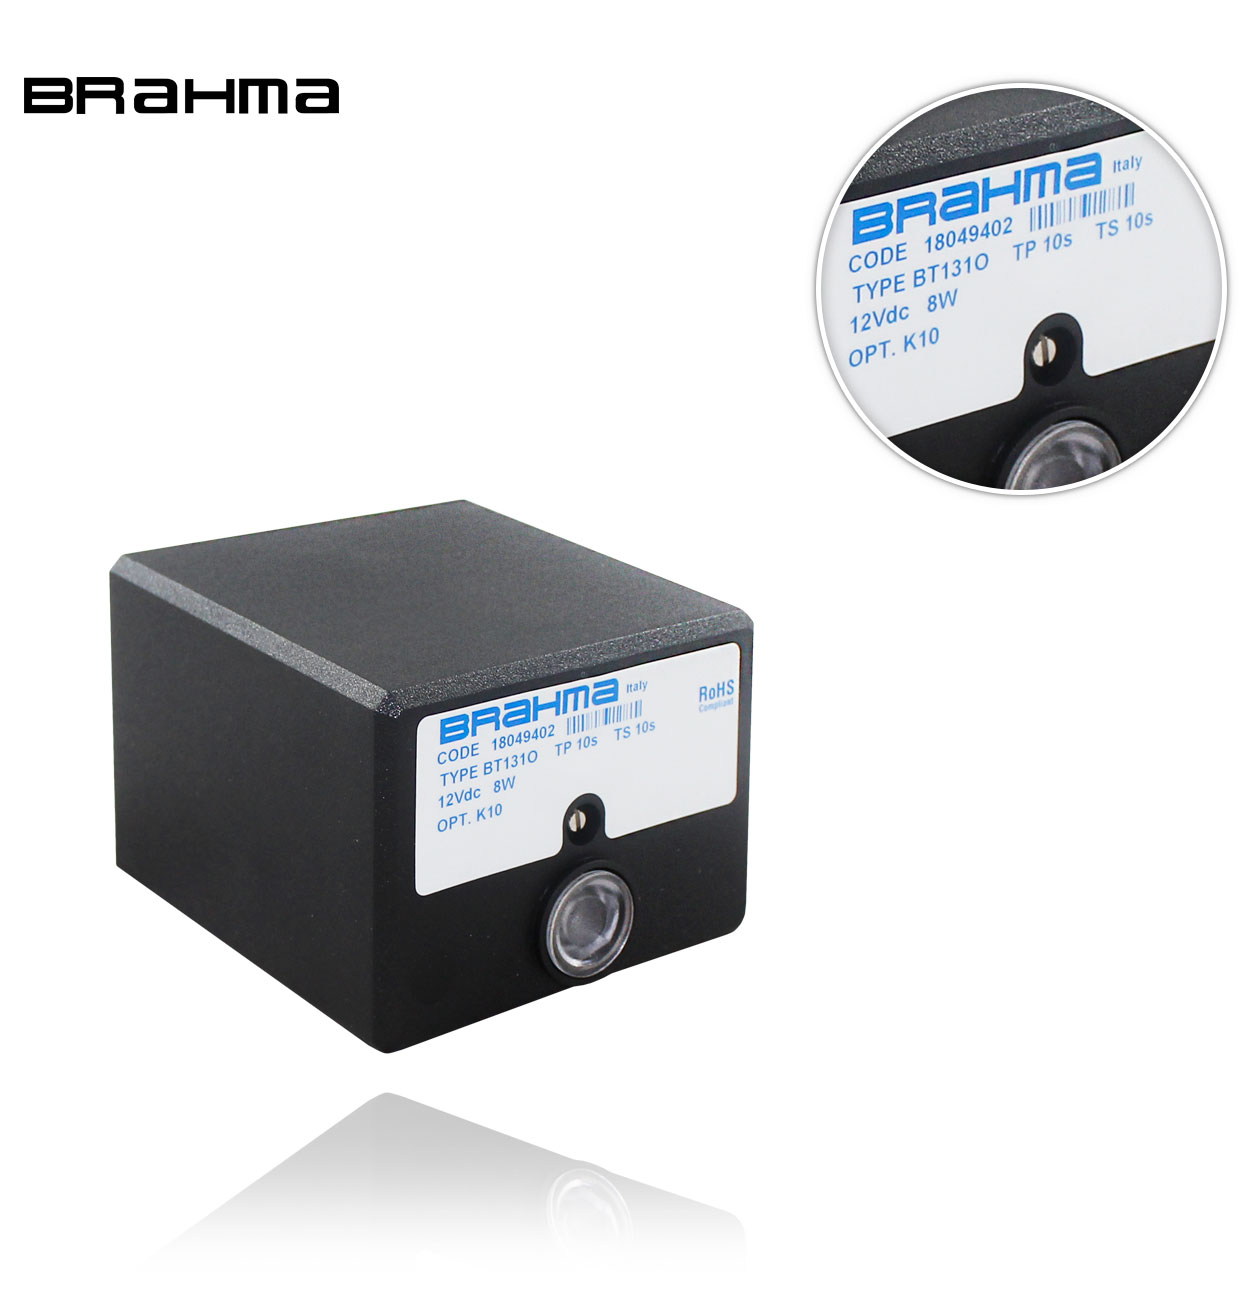 BT 1310 TP10 TS10  BRAHMA CONTROL BOX